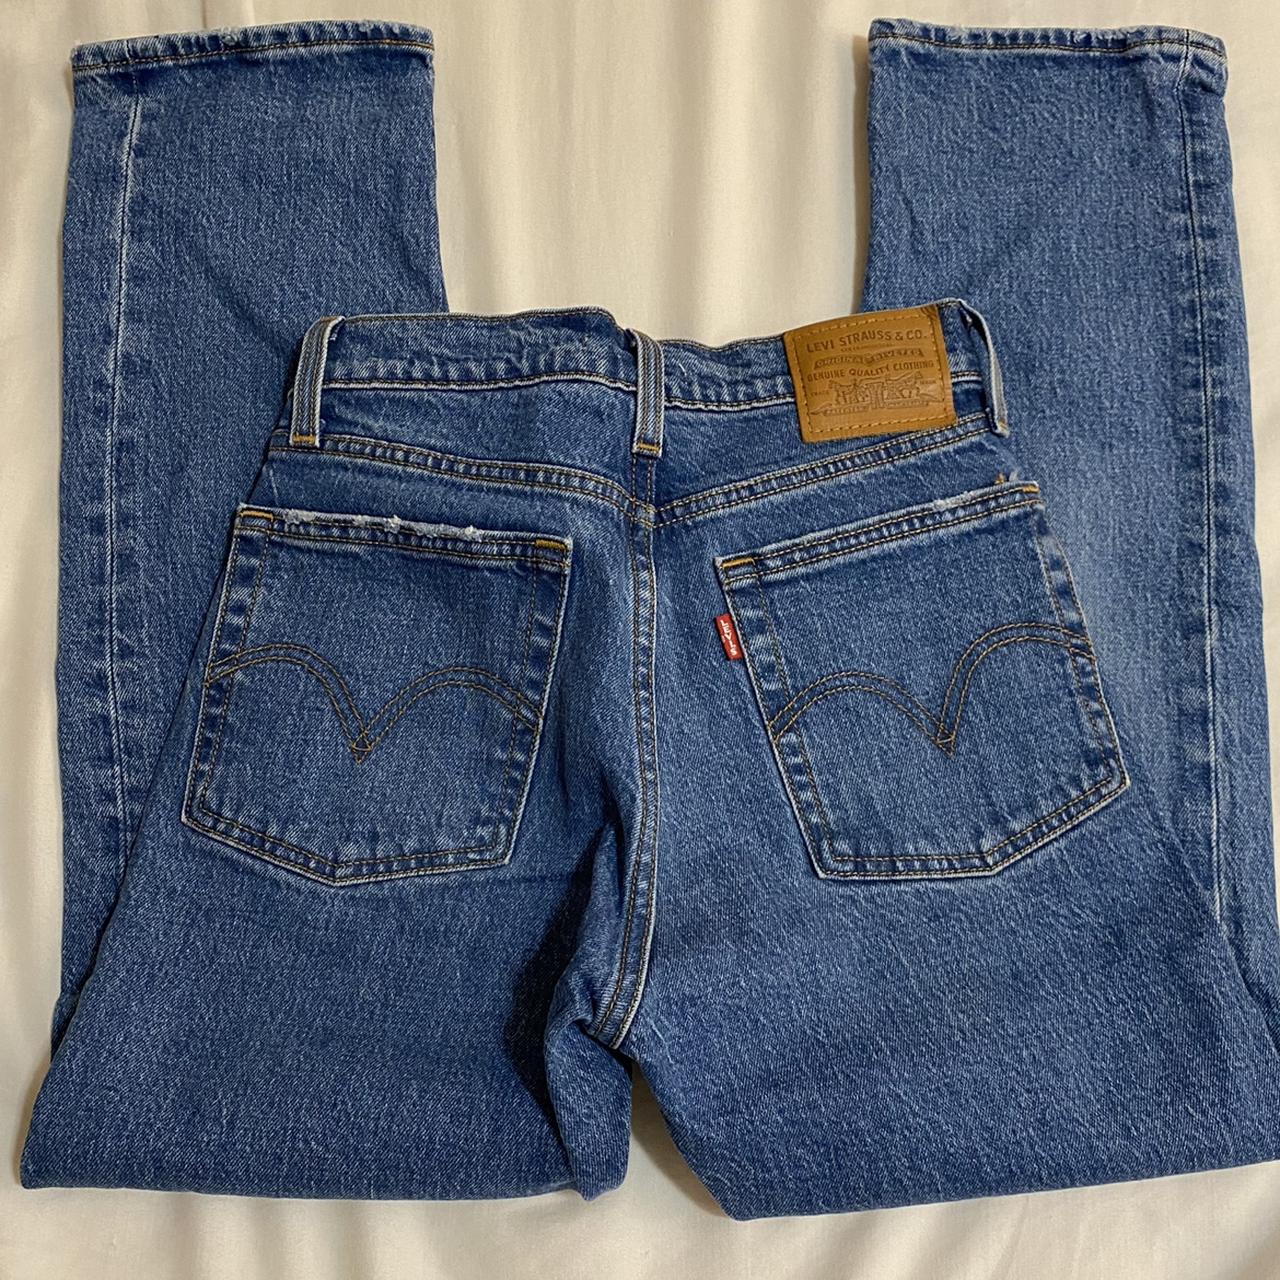 Wedgie Straight Fit Women's Jeans - Dark Wash